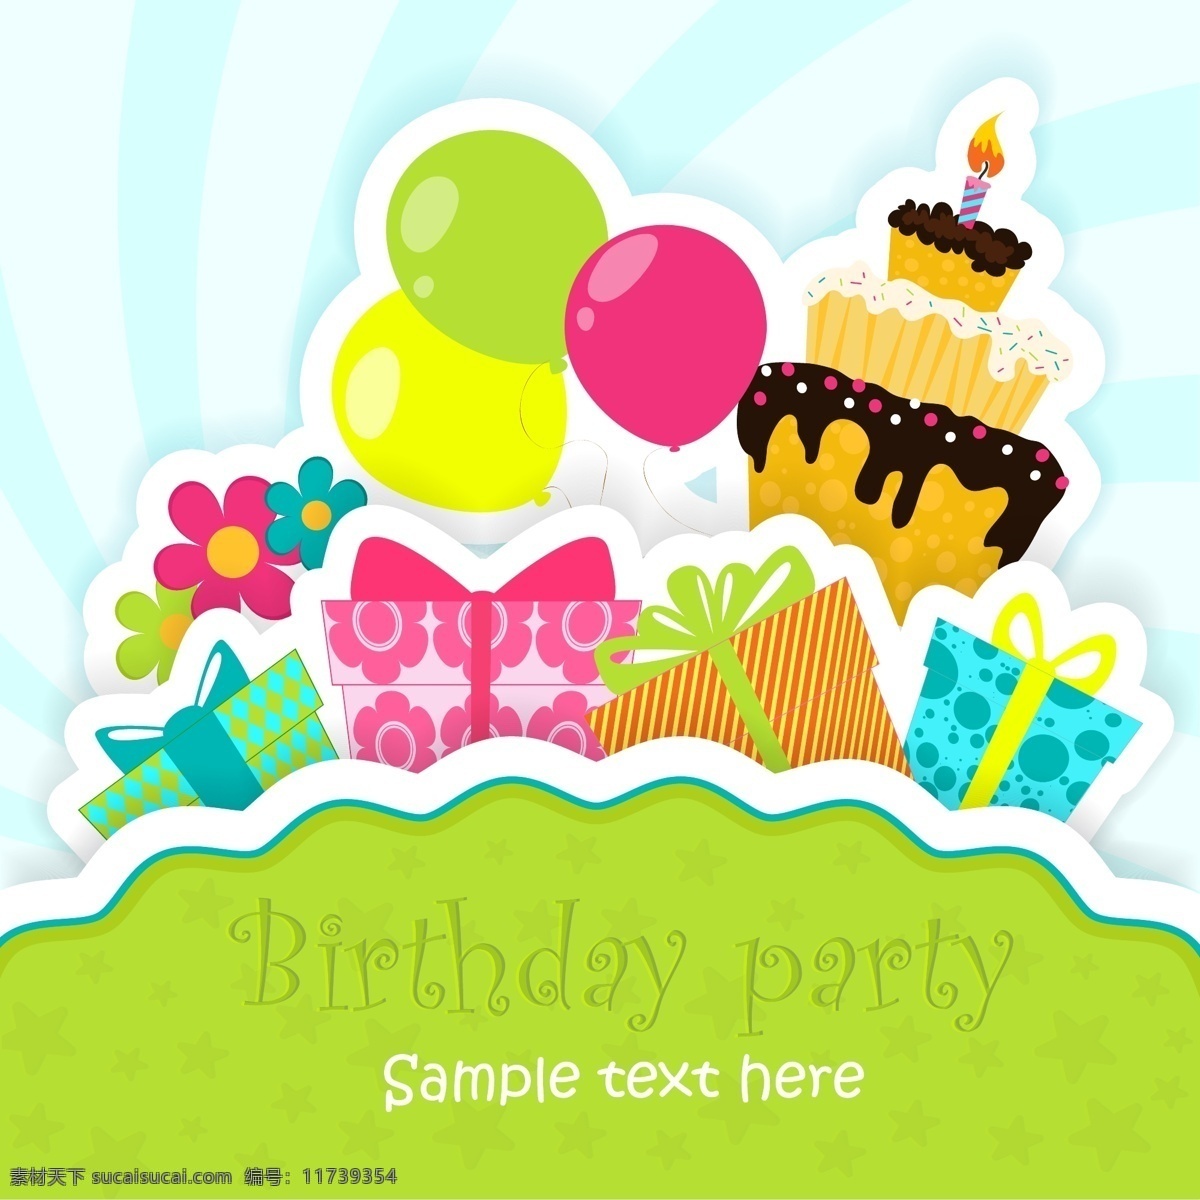 生日 卡片 矢量 蛋糕 礼盒 气球 矢量素材 矢量图 日常生活